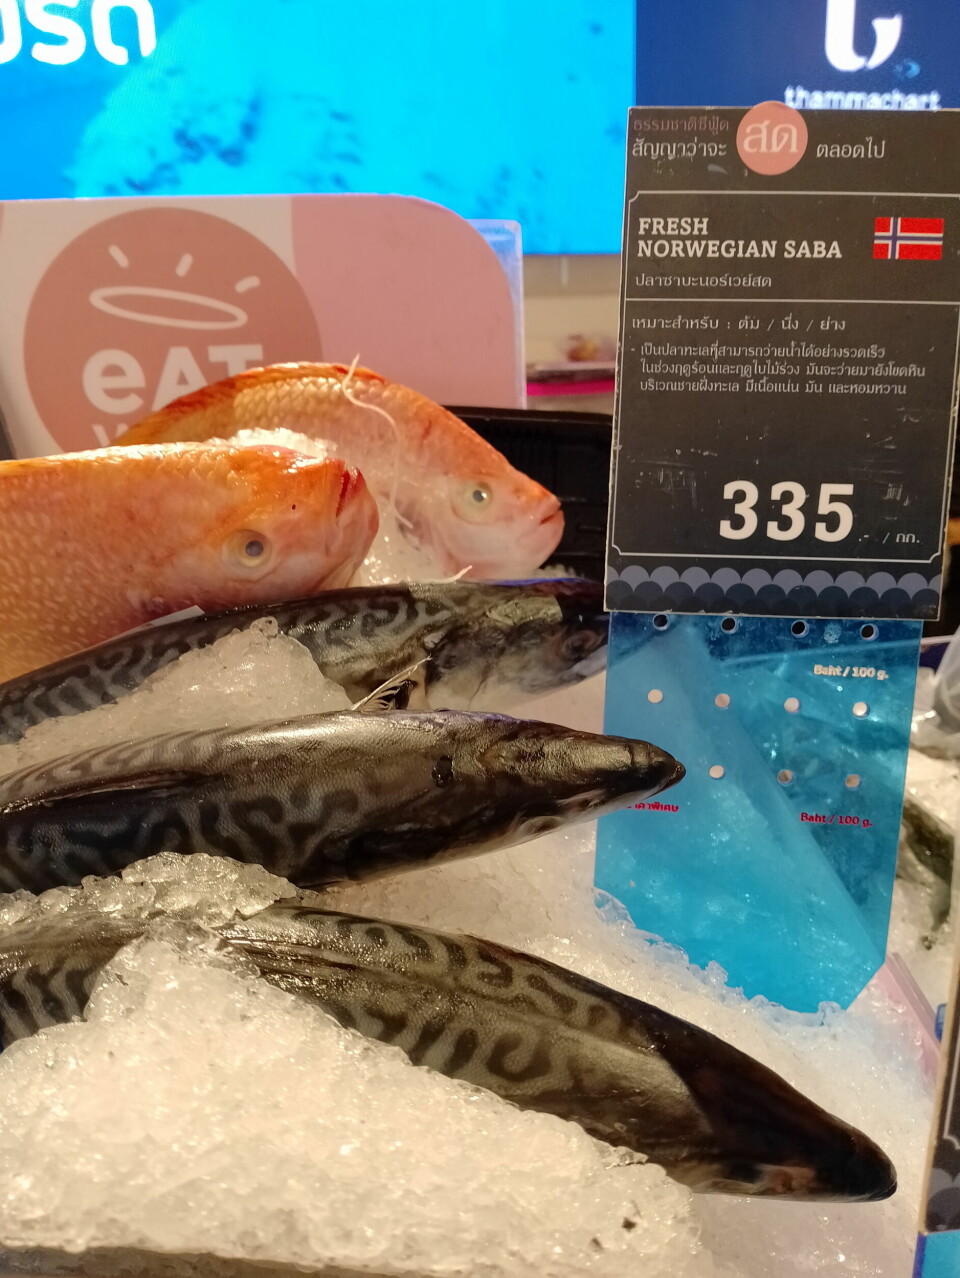 TINT MAKRELL: I det eksklusive supermarkedet Gourmet Market koster tint norsk makrell nesten hundre kroner per kilo.